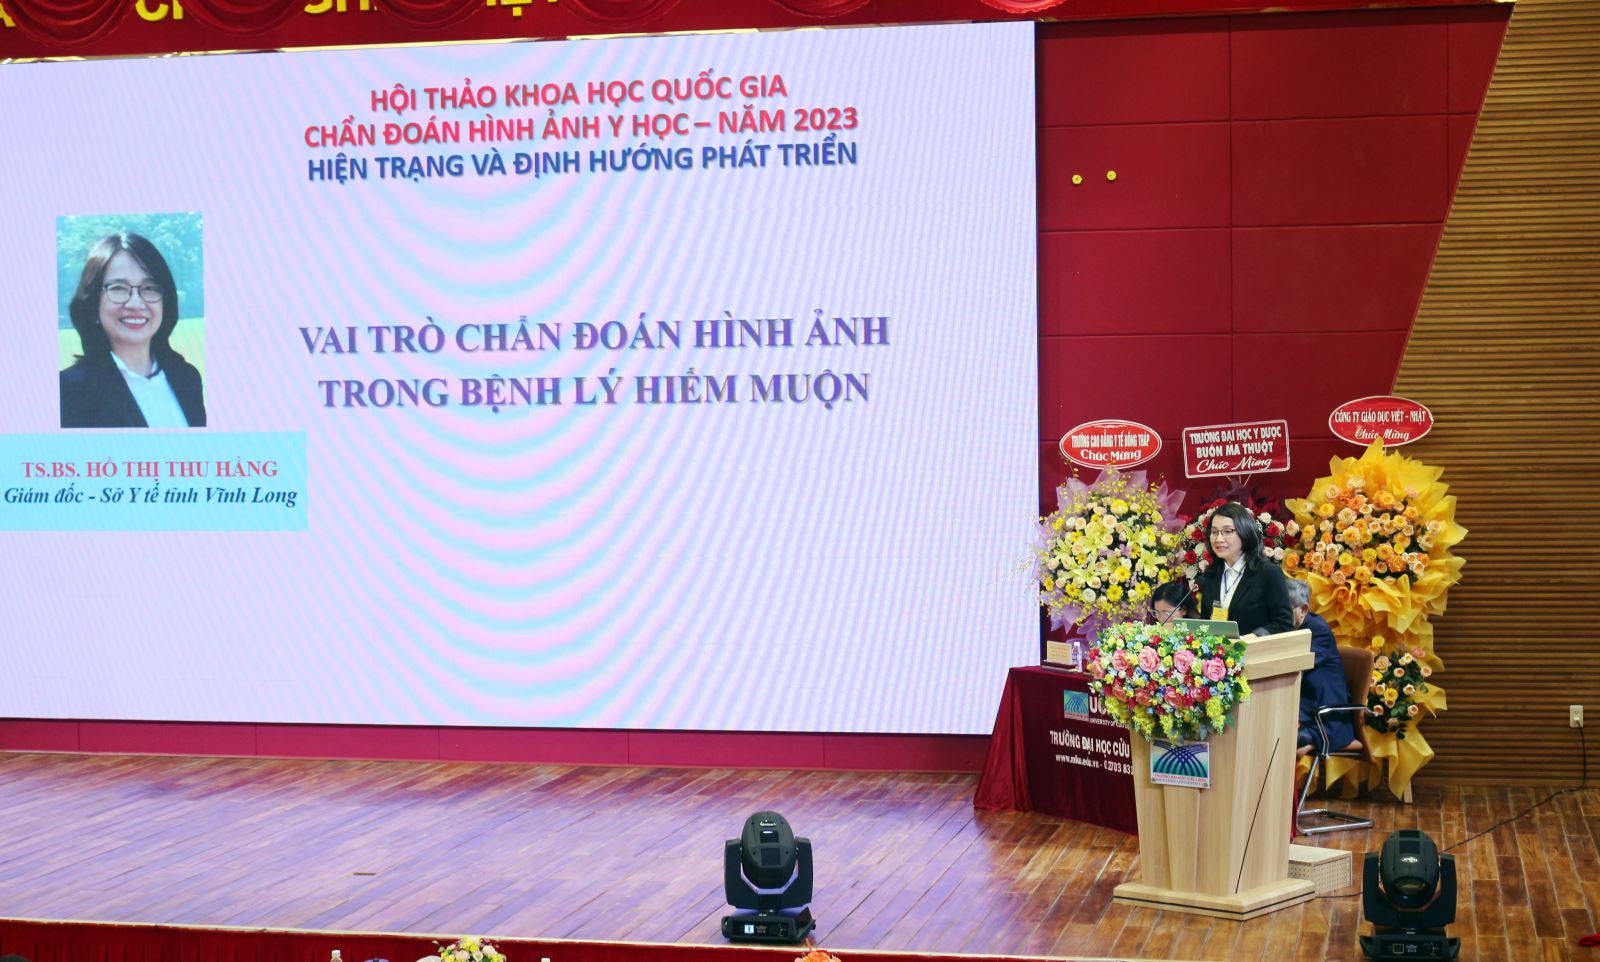 Tiến sĩ, Bác sĩ Hồ Thị Thu Hằng - Giám đốc Sở Y tế tỉnh Vĩnh Long trình bày tham luận về vai trò chẩn đoán hình ảnh trong bệnh lý hiếm muộn.